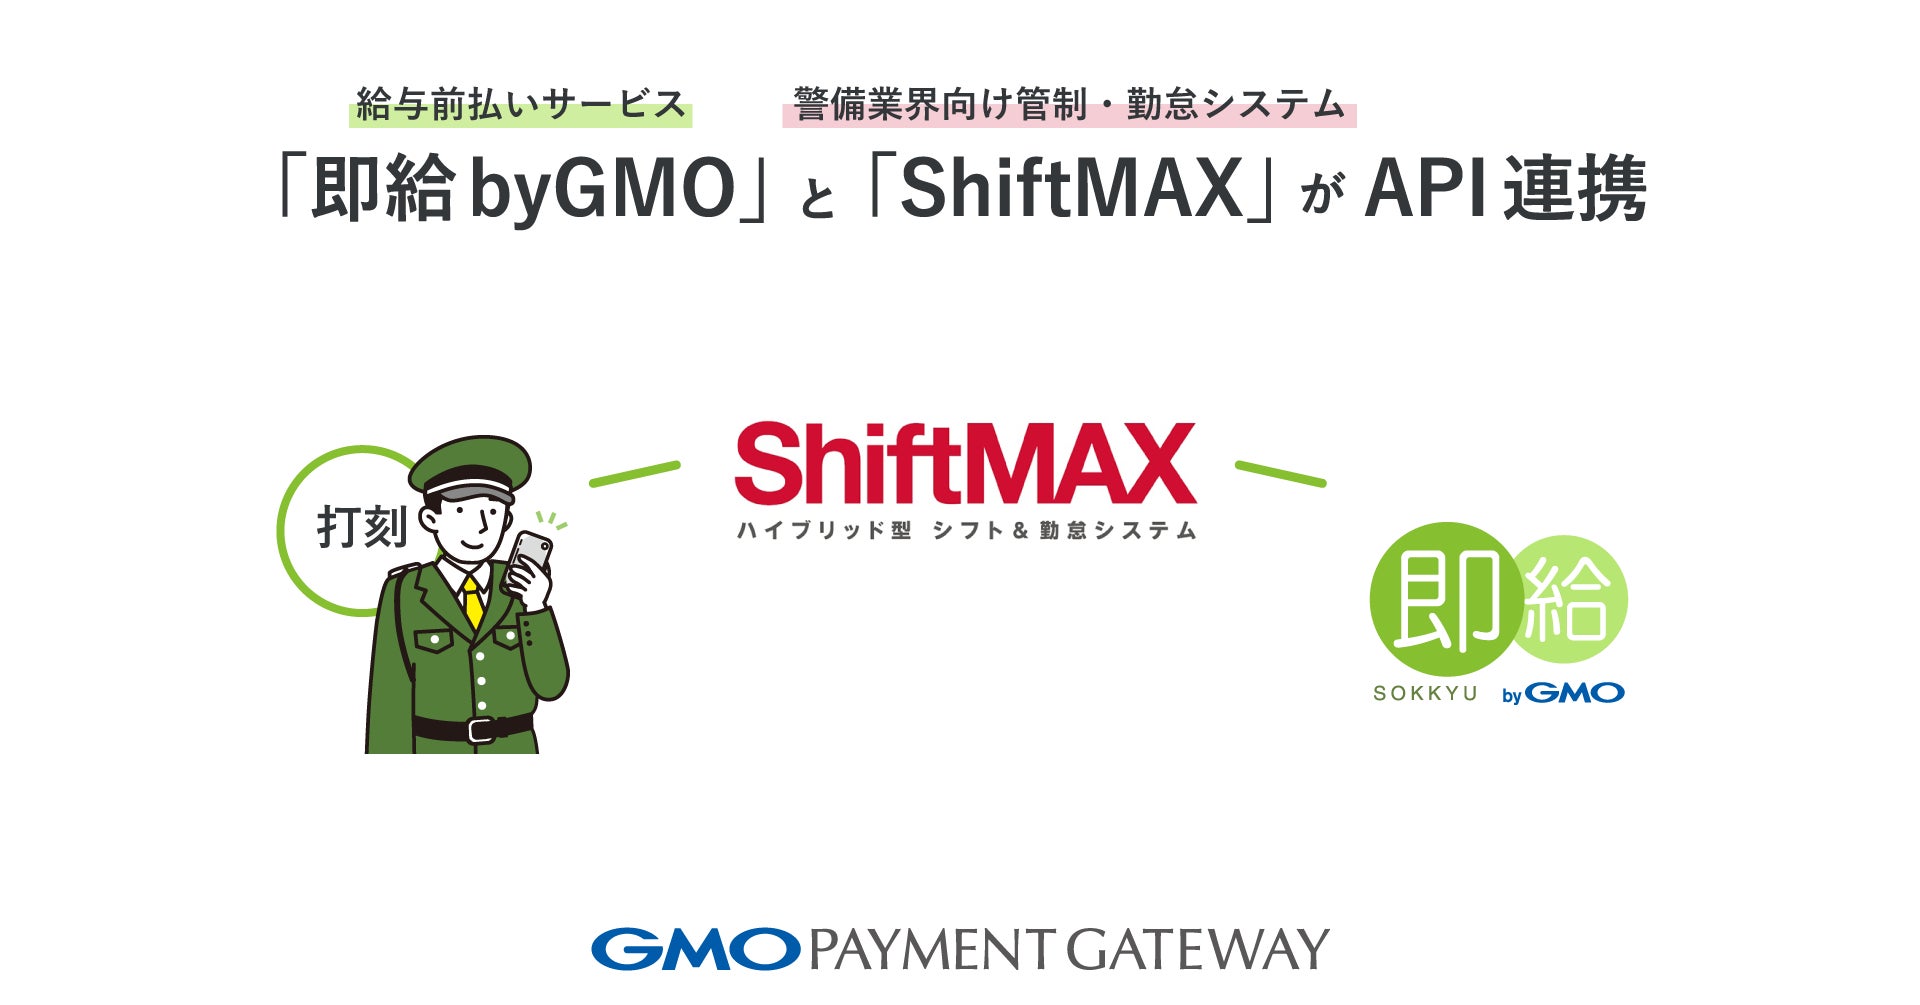 給与前払いサービス「即給 byGMO」と警備業界向け管制・勤怠システム「ShiftMAX」がAPI連携【GMOペイメントゲートウェイ】